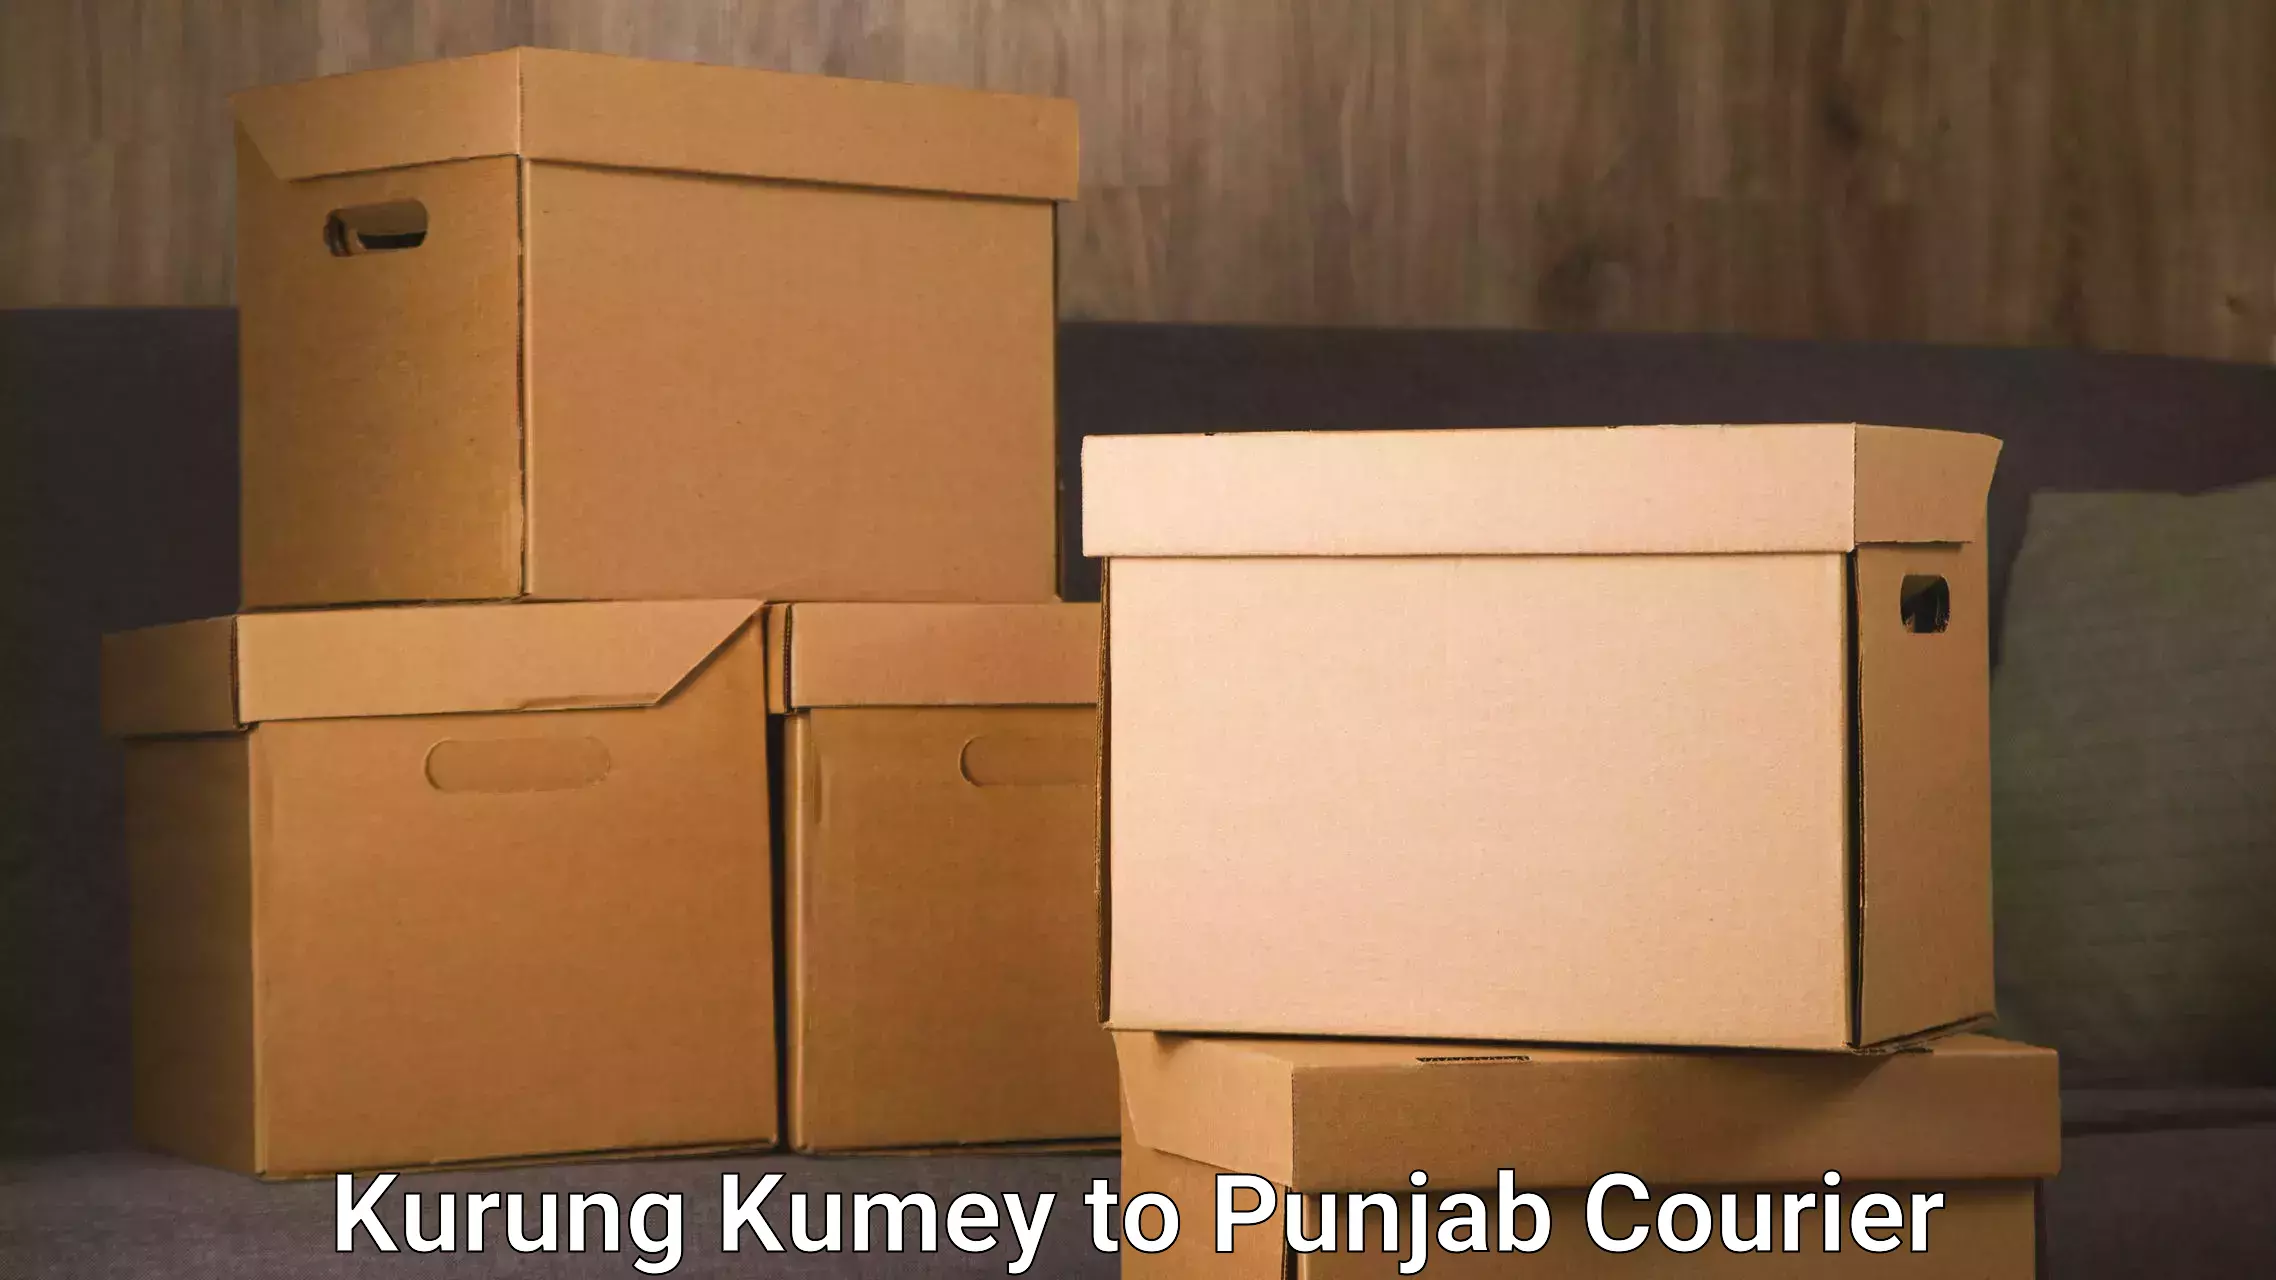 Doorstep delivery service Kurung Kumey to Punjab